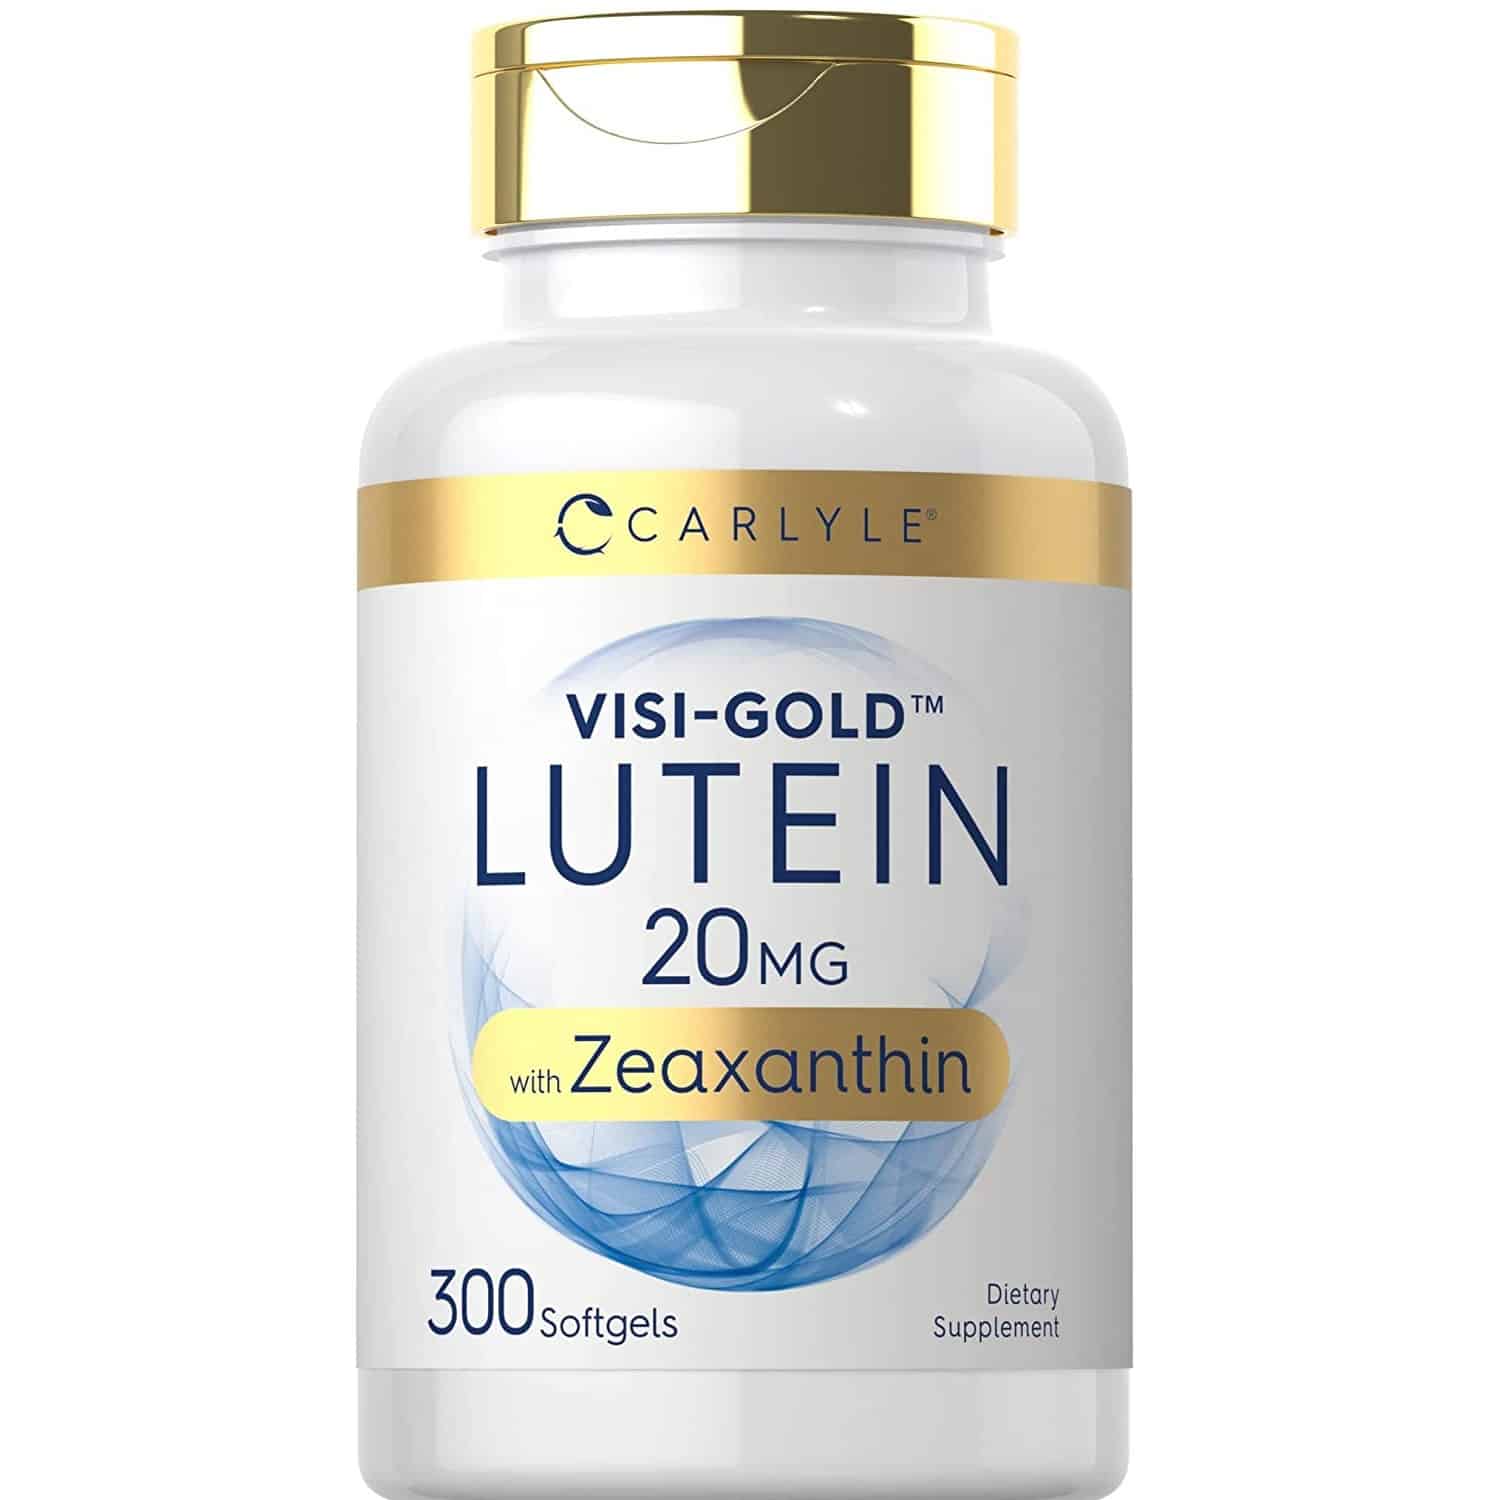 Puritan’s Pride Lutein Supplements